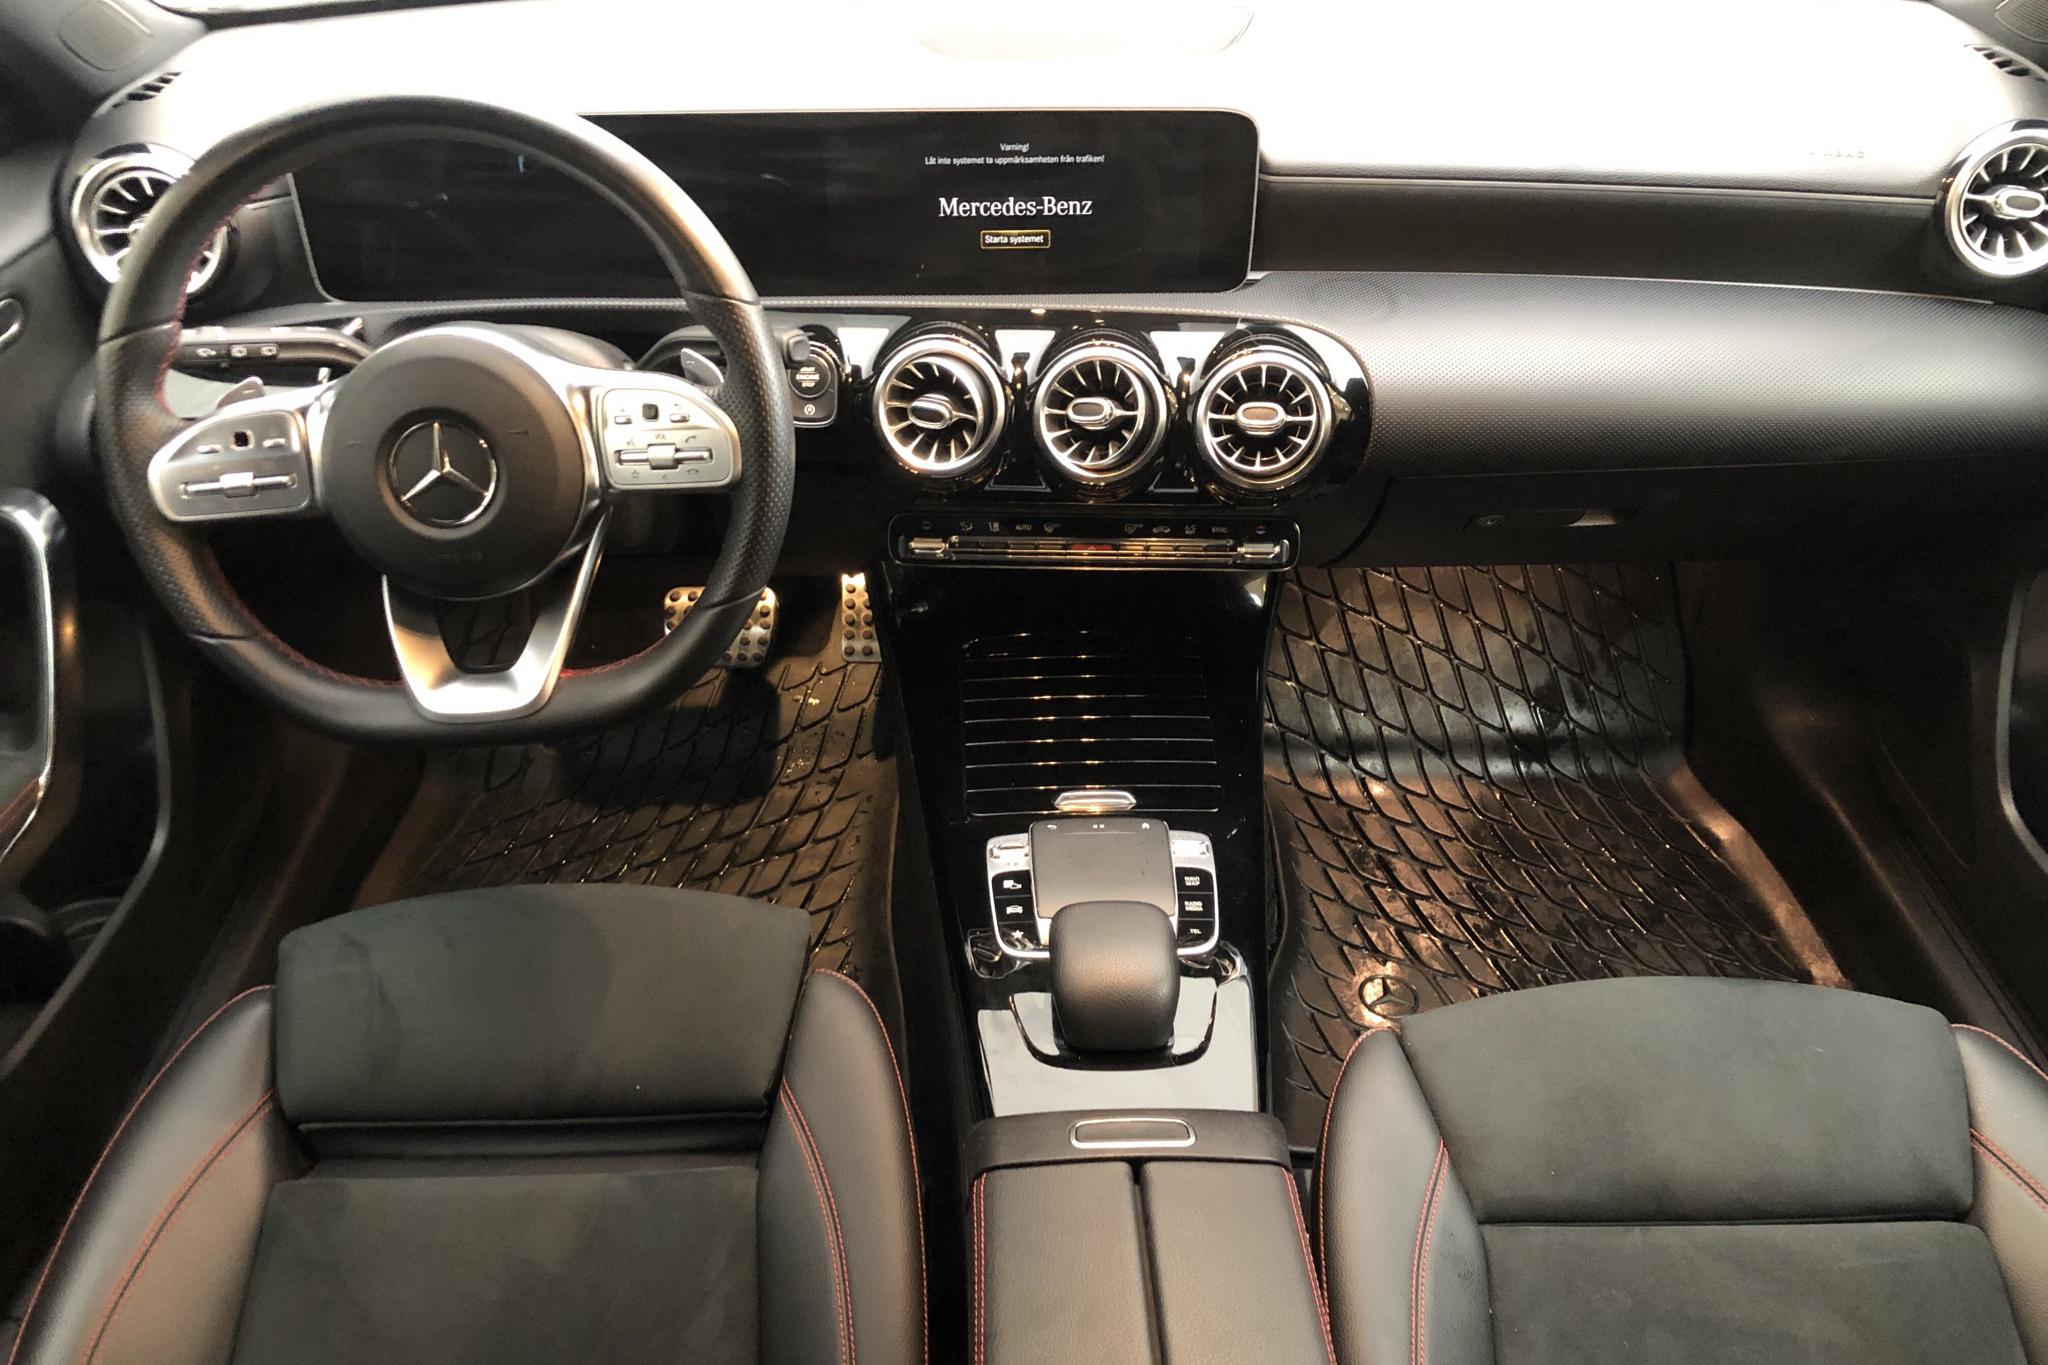 Mercedes A 200 5dr W177 (163hk) - 28 100 km - Automatic - white - 2018